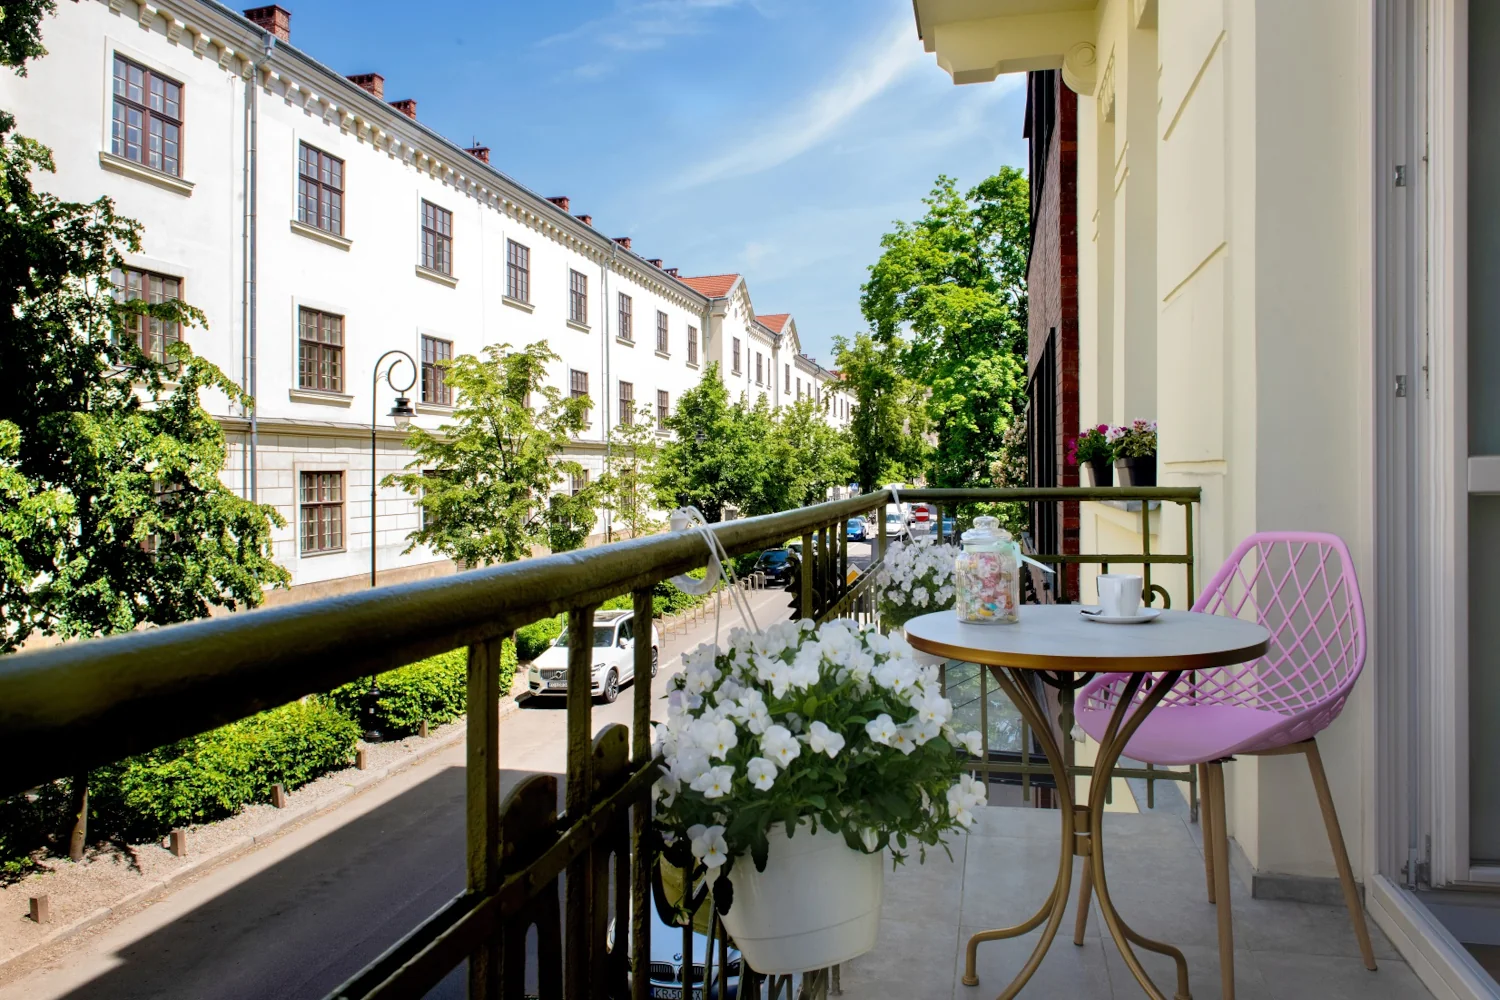 Rajska Residence - nowy hotel samoobsługowy na mapie Krakowa